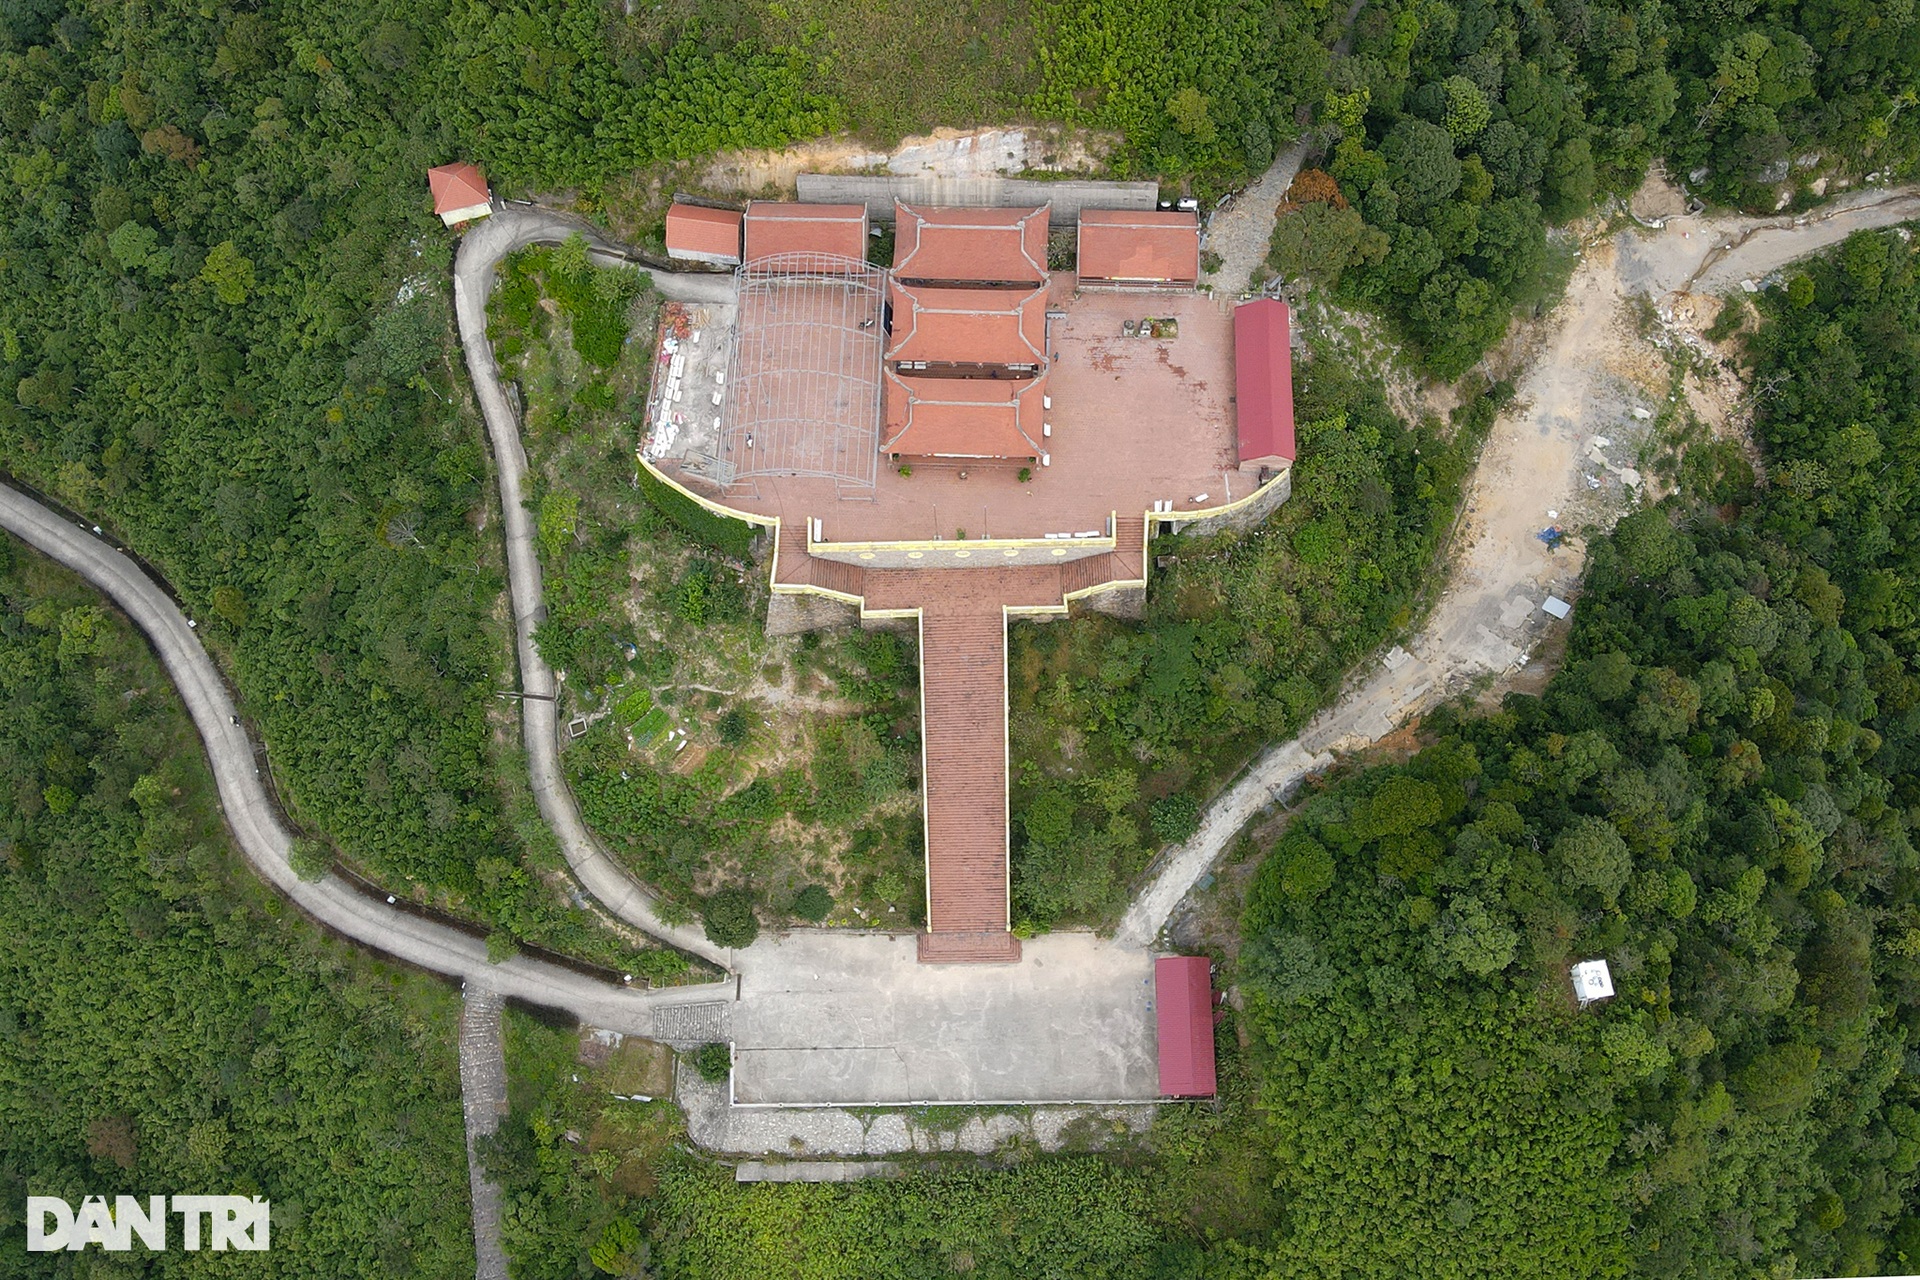 Chiêm ngưỡng ngôi chùa cổ cheo leo trên đỉnh núi ở Quảng Ninh - 3